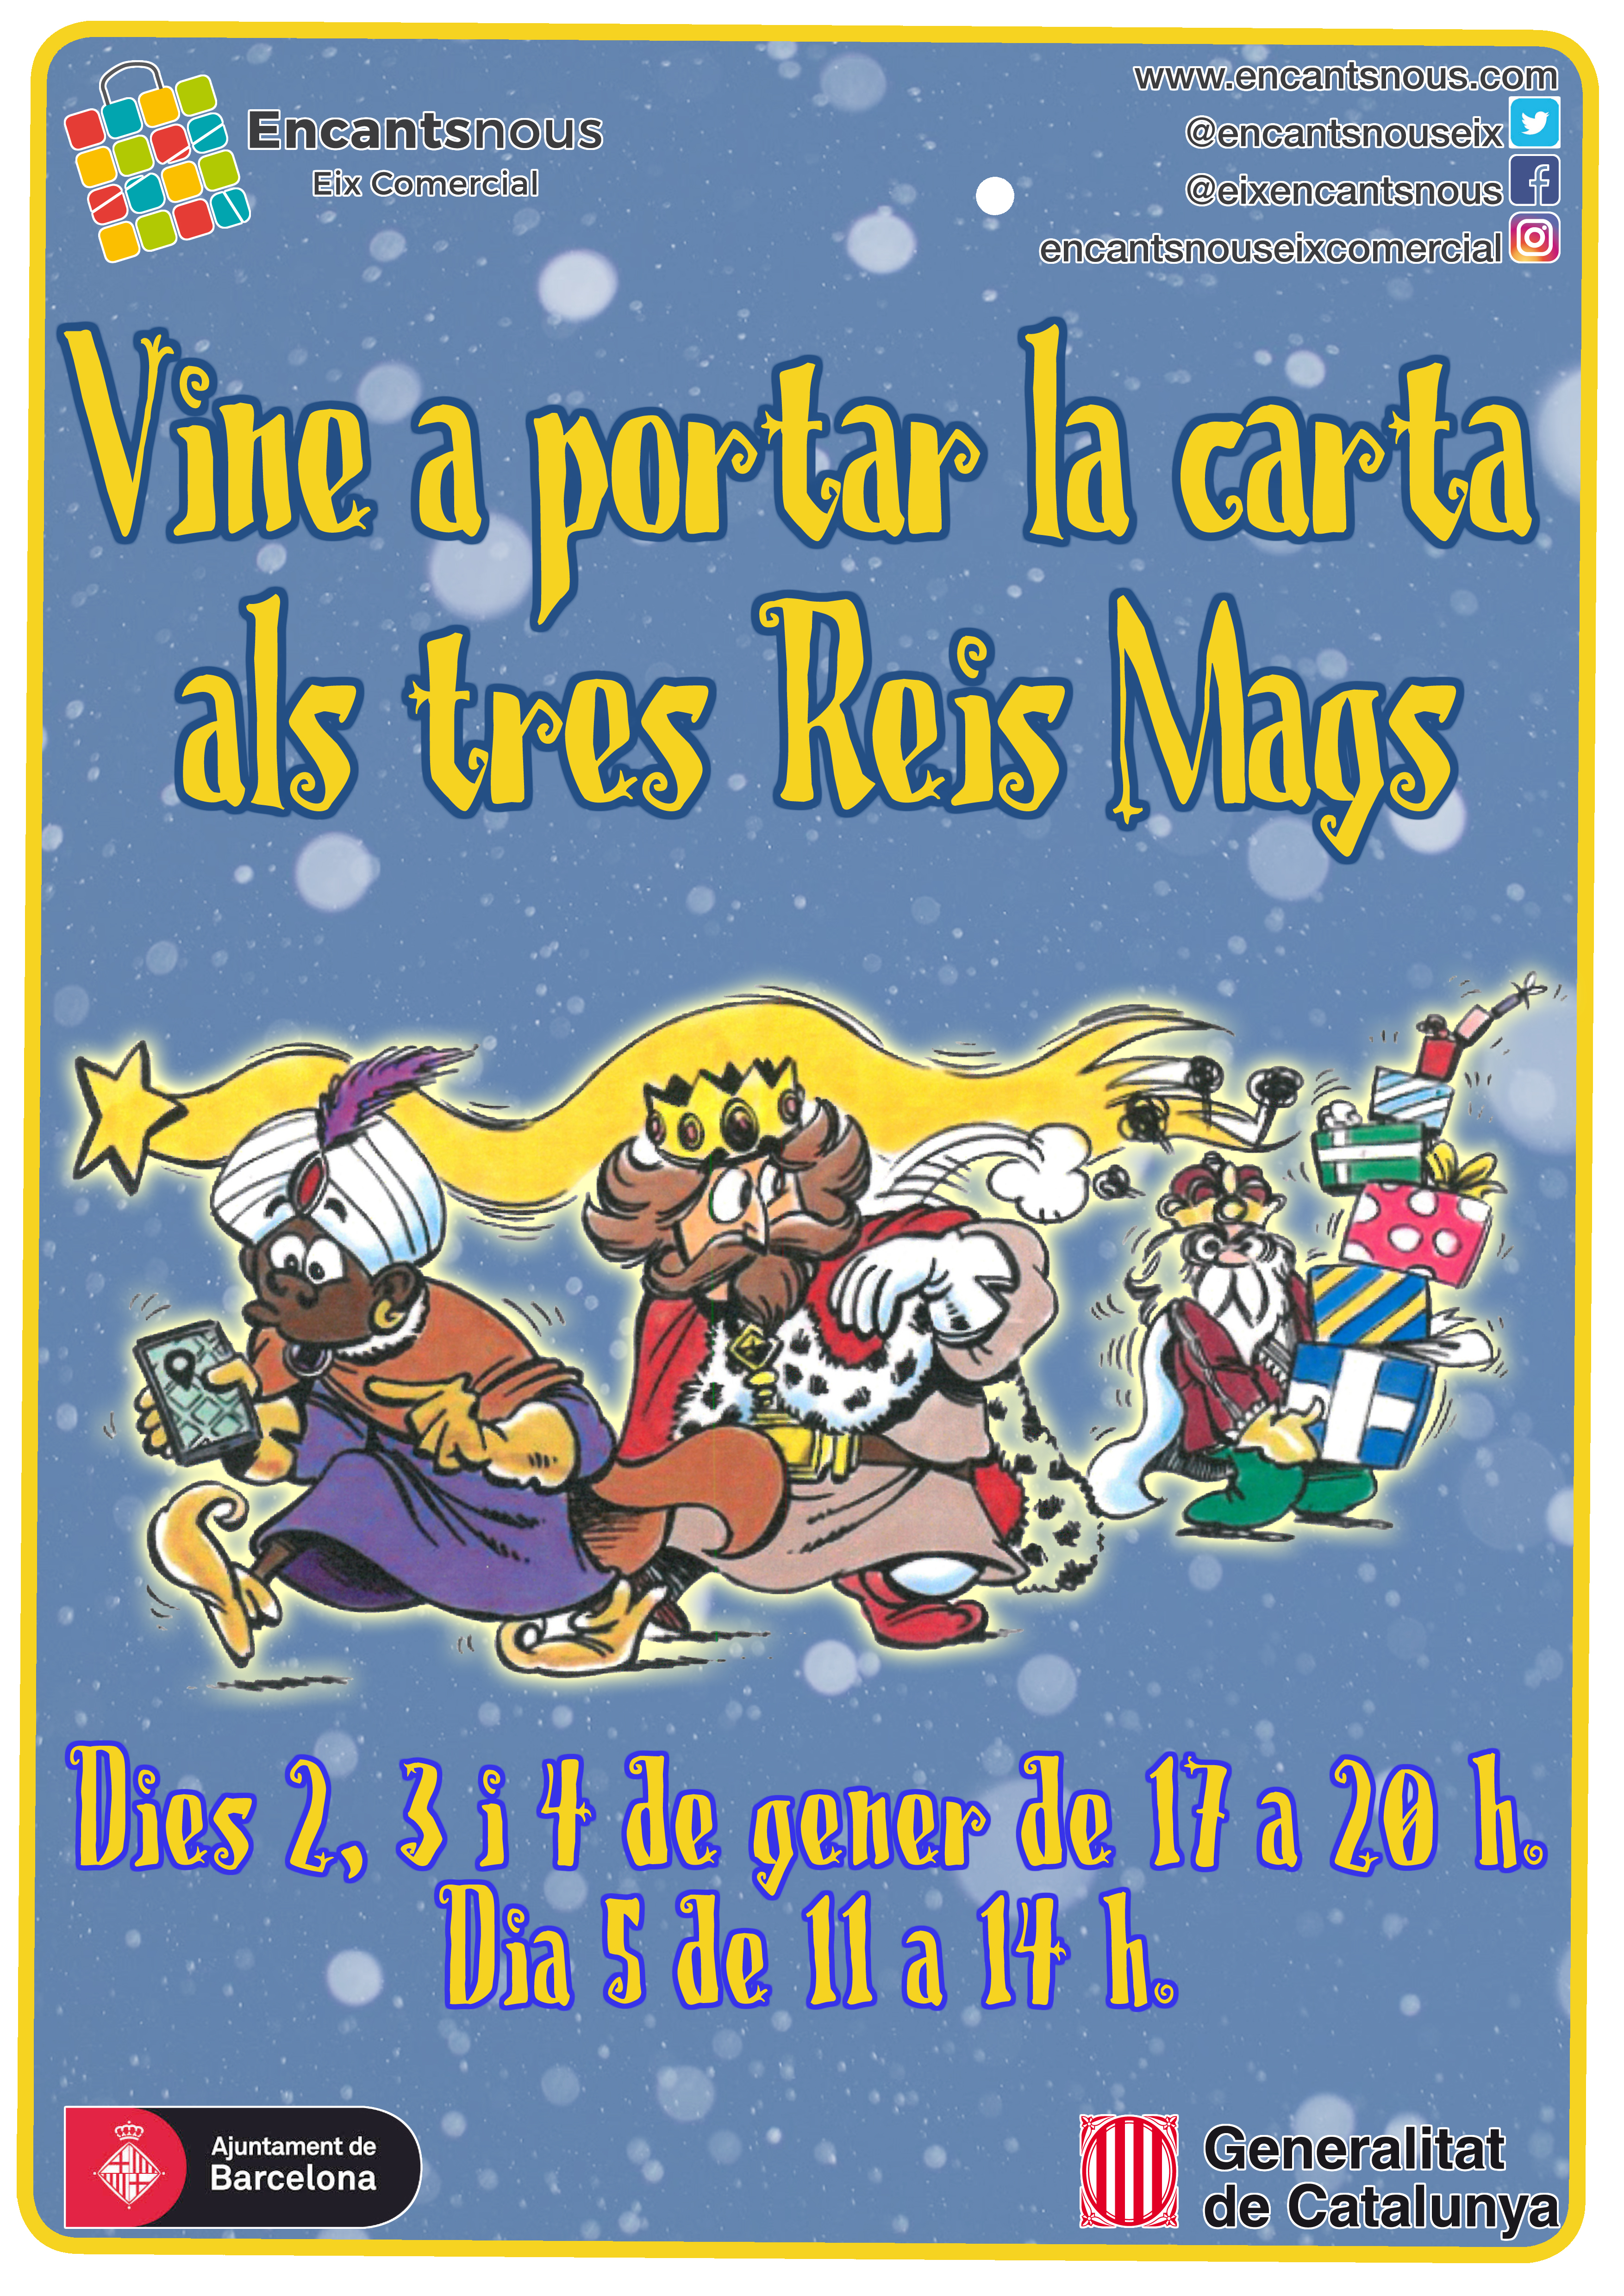 Los Reyes Magos llegan a Encantsnous Eix Comercial! 